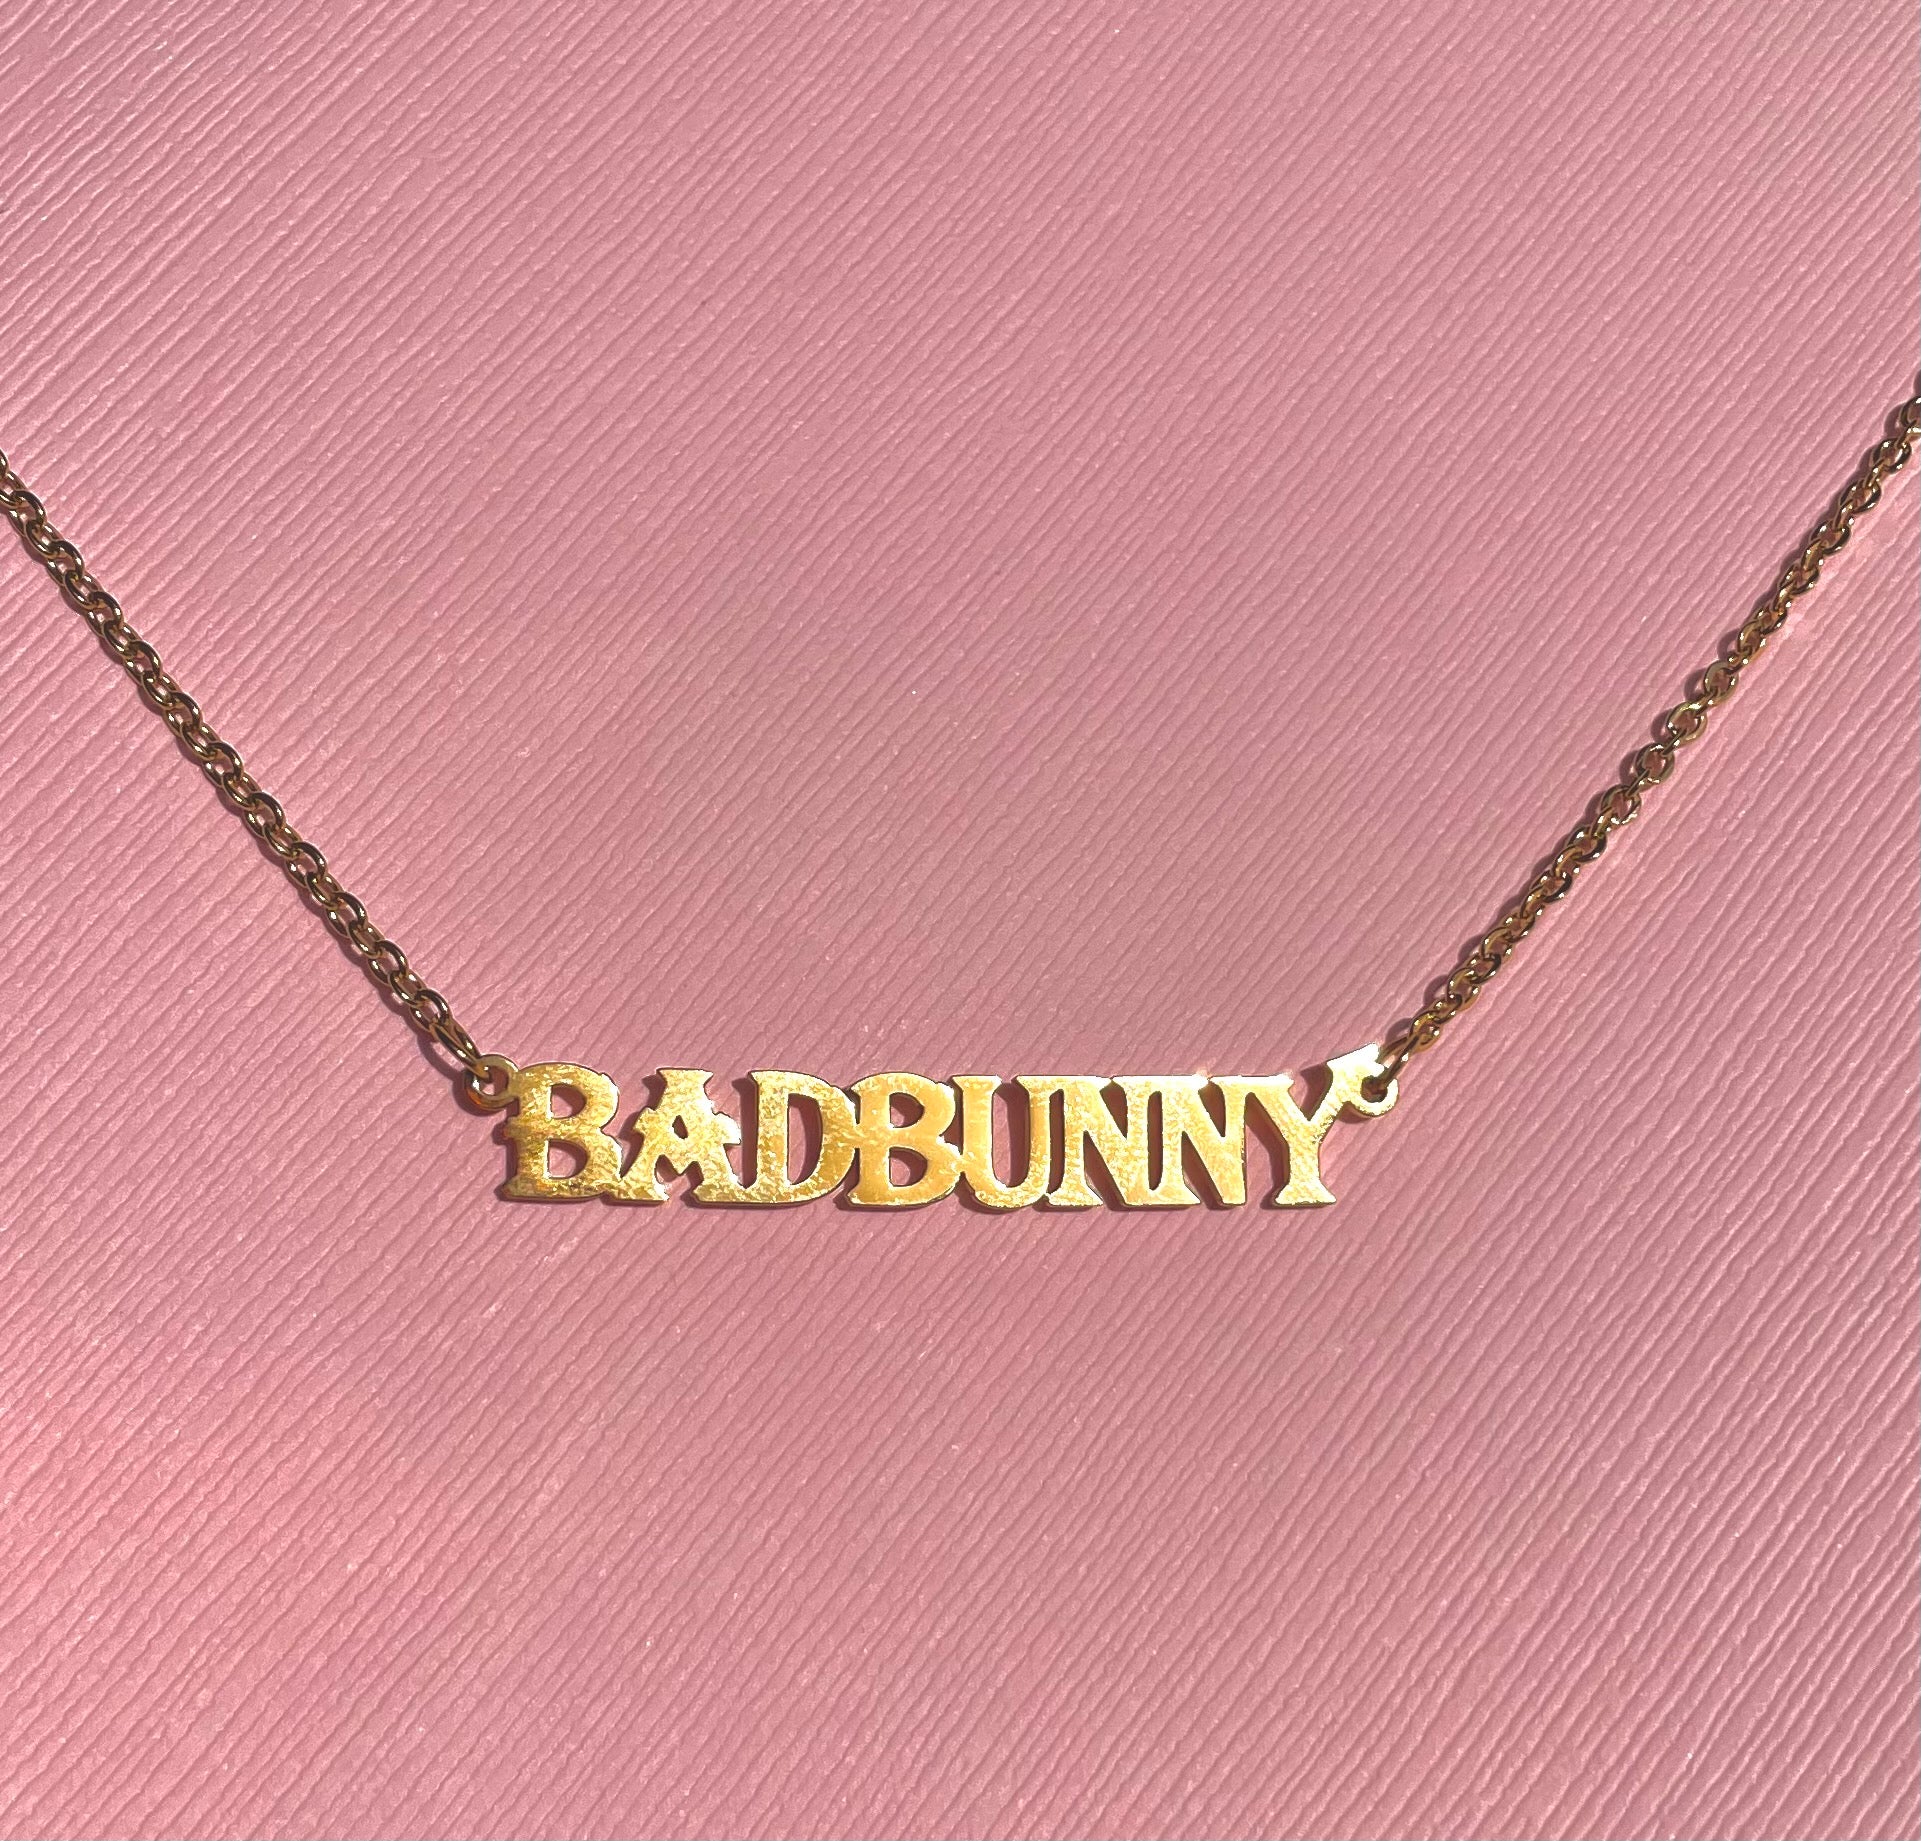 Bad Bunny Necklace